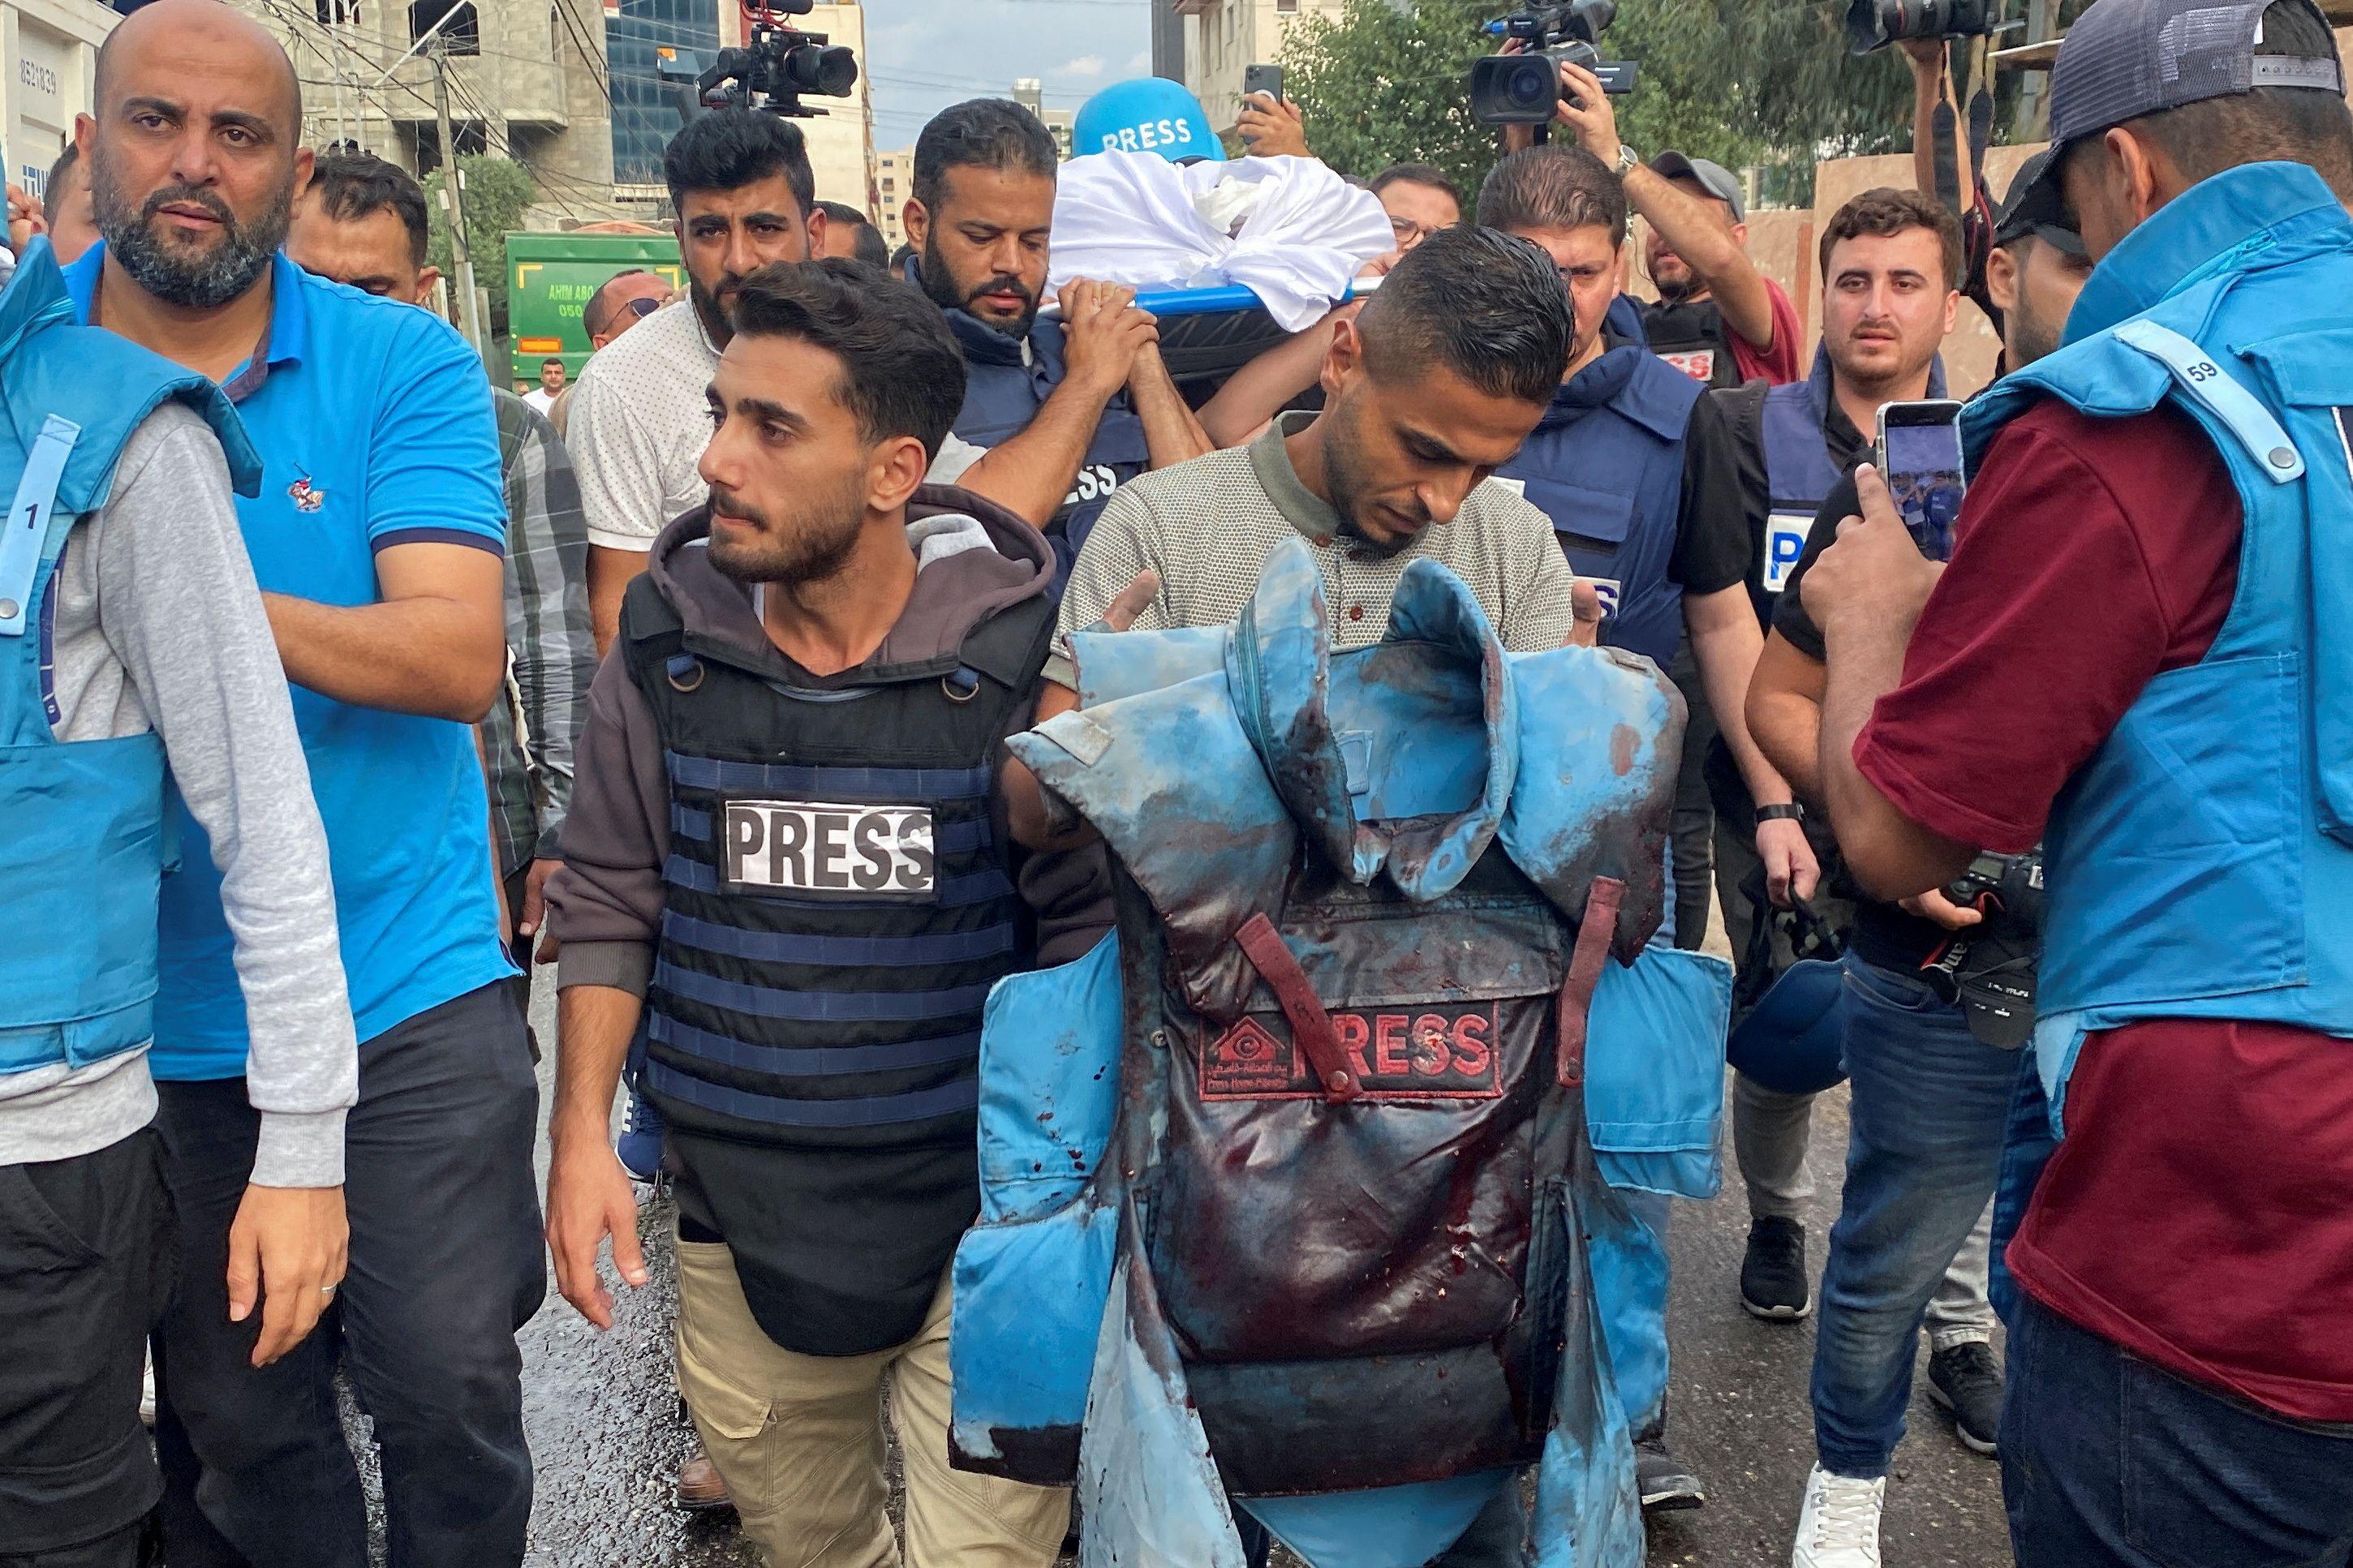 Reuters | سترة الصحفي الفلسطيني محمد صبح الذي قُتل في غارة إسرائيلية مع عدد من الصحفيين أثناء وجودهم أمام أحد المباني في مستشفى في مدينة غزة